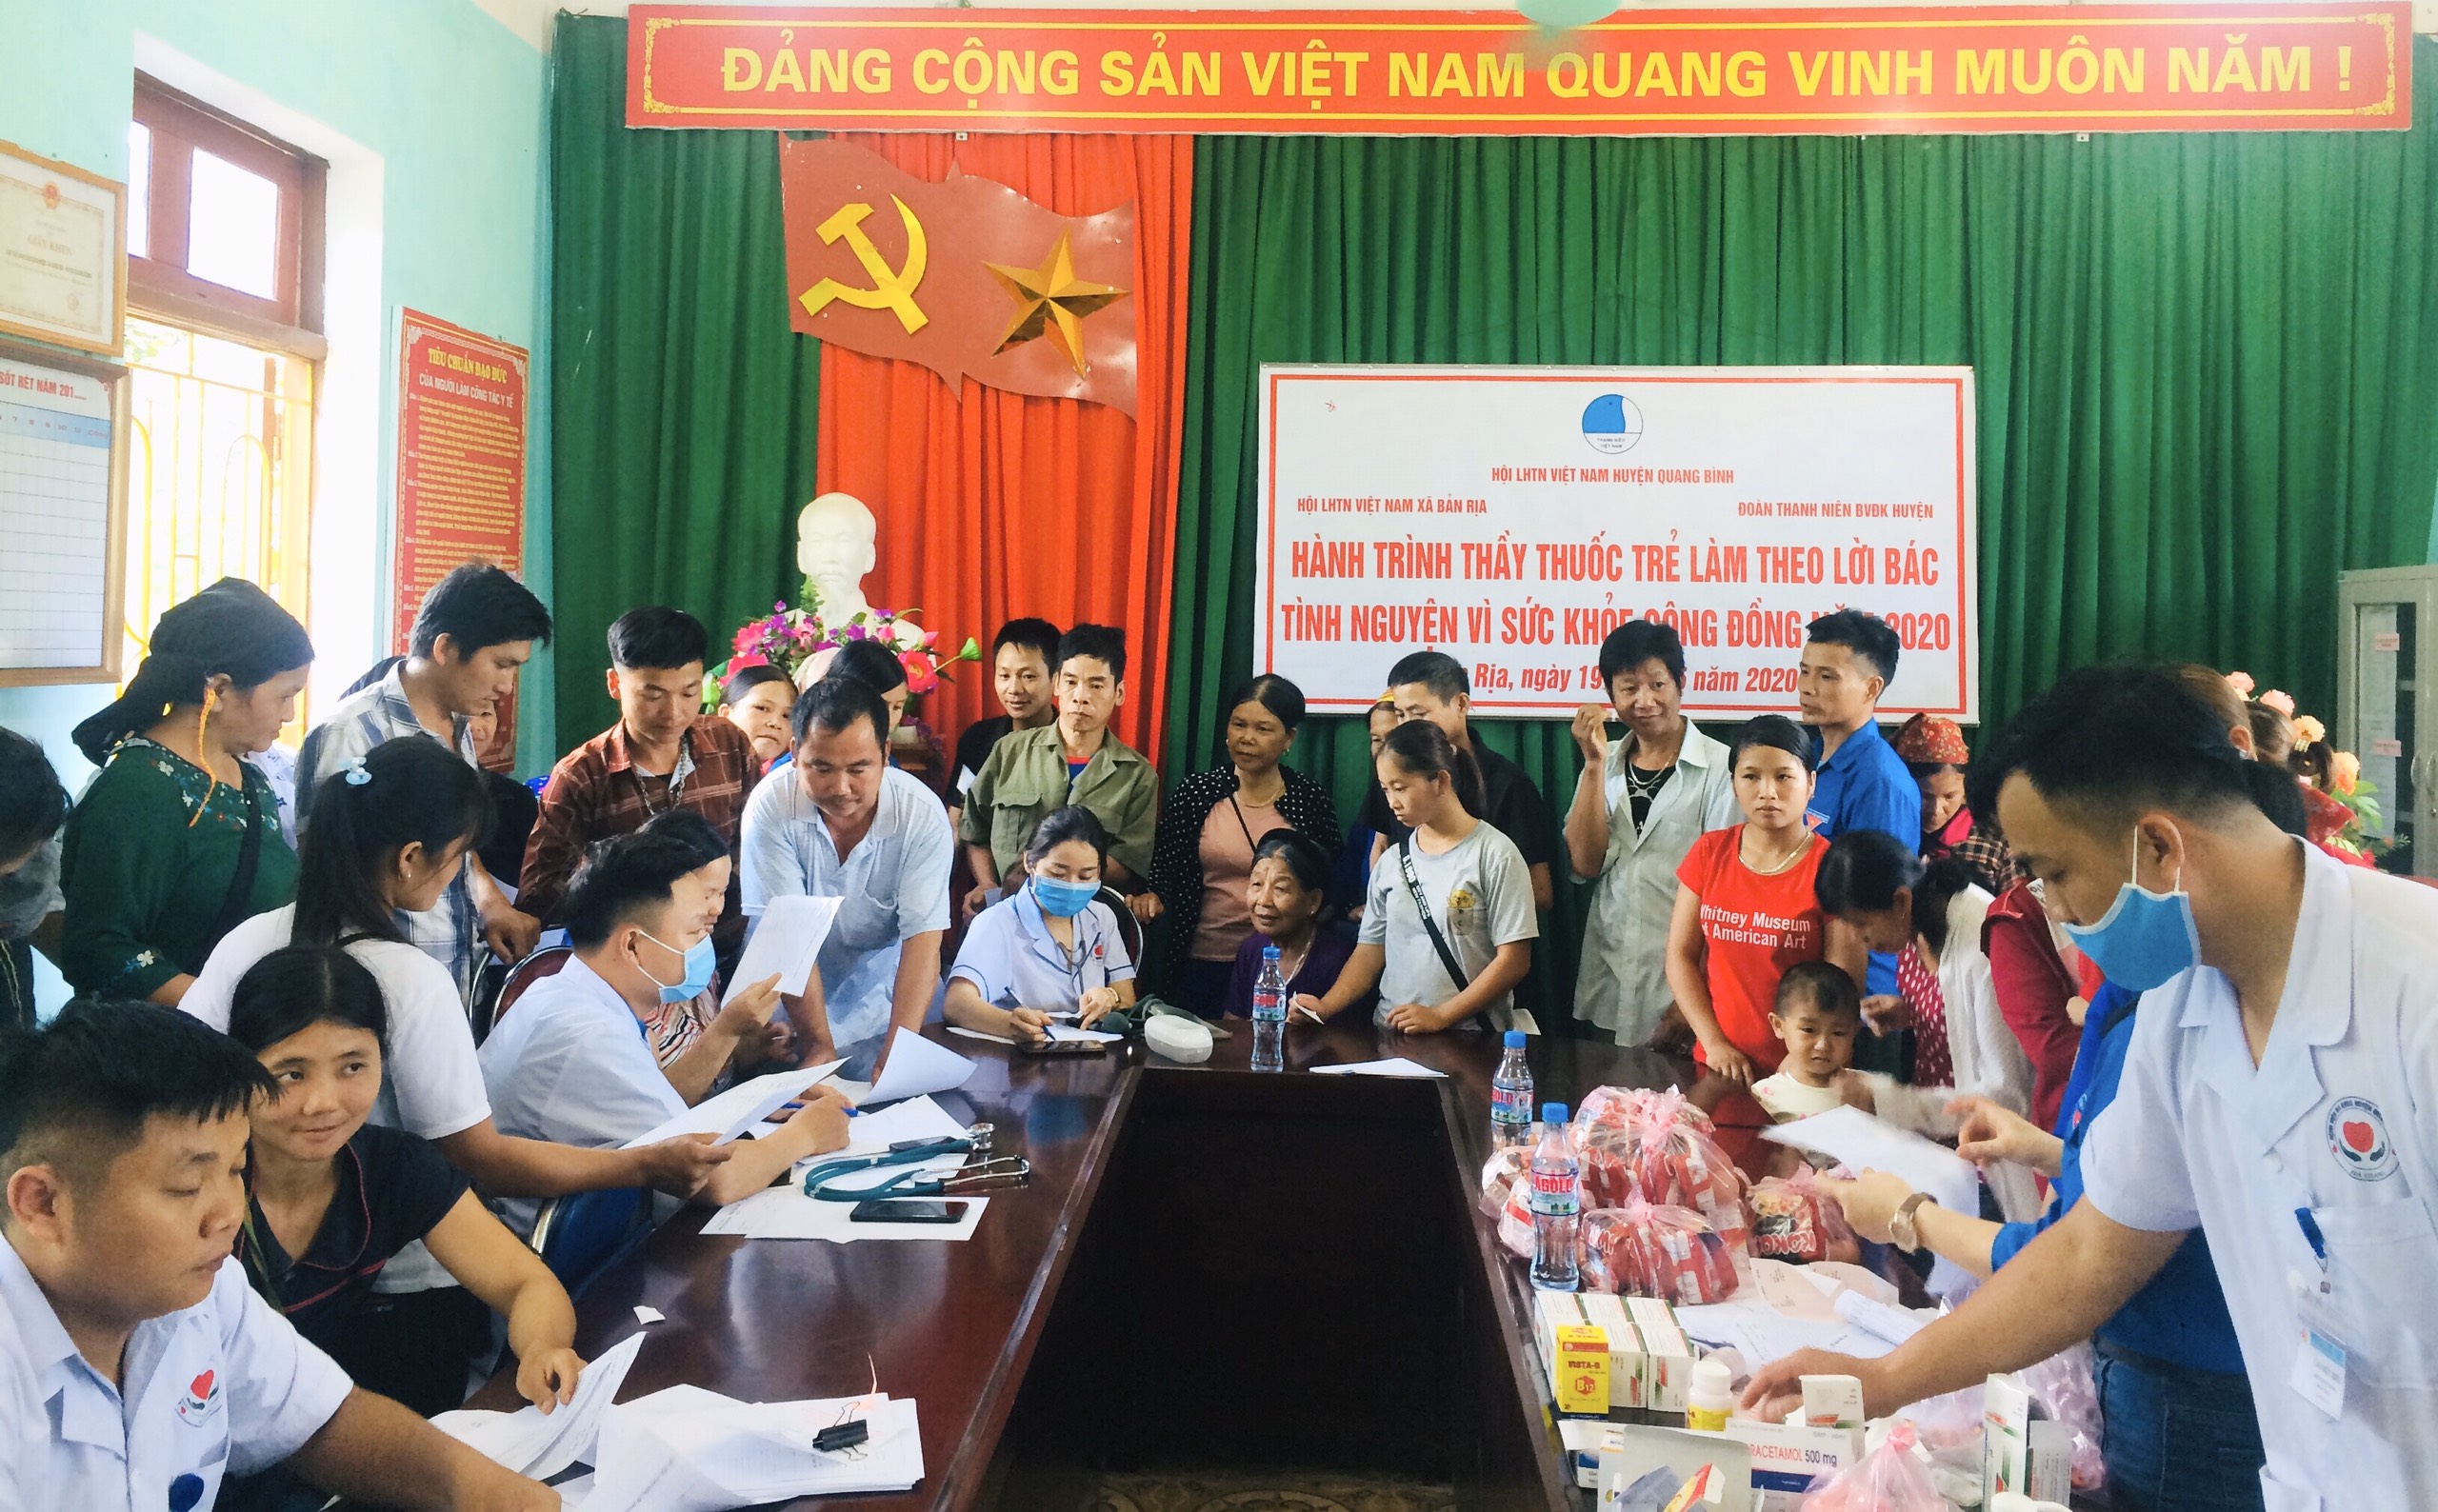 Đoàn Thanh niên BVĐK Quang Bình khám bệnh, cấp phát thuốc miễn phí cho người dân xã Bản Rịa